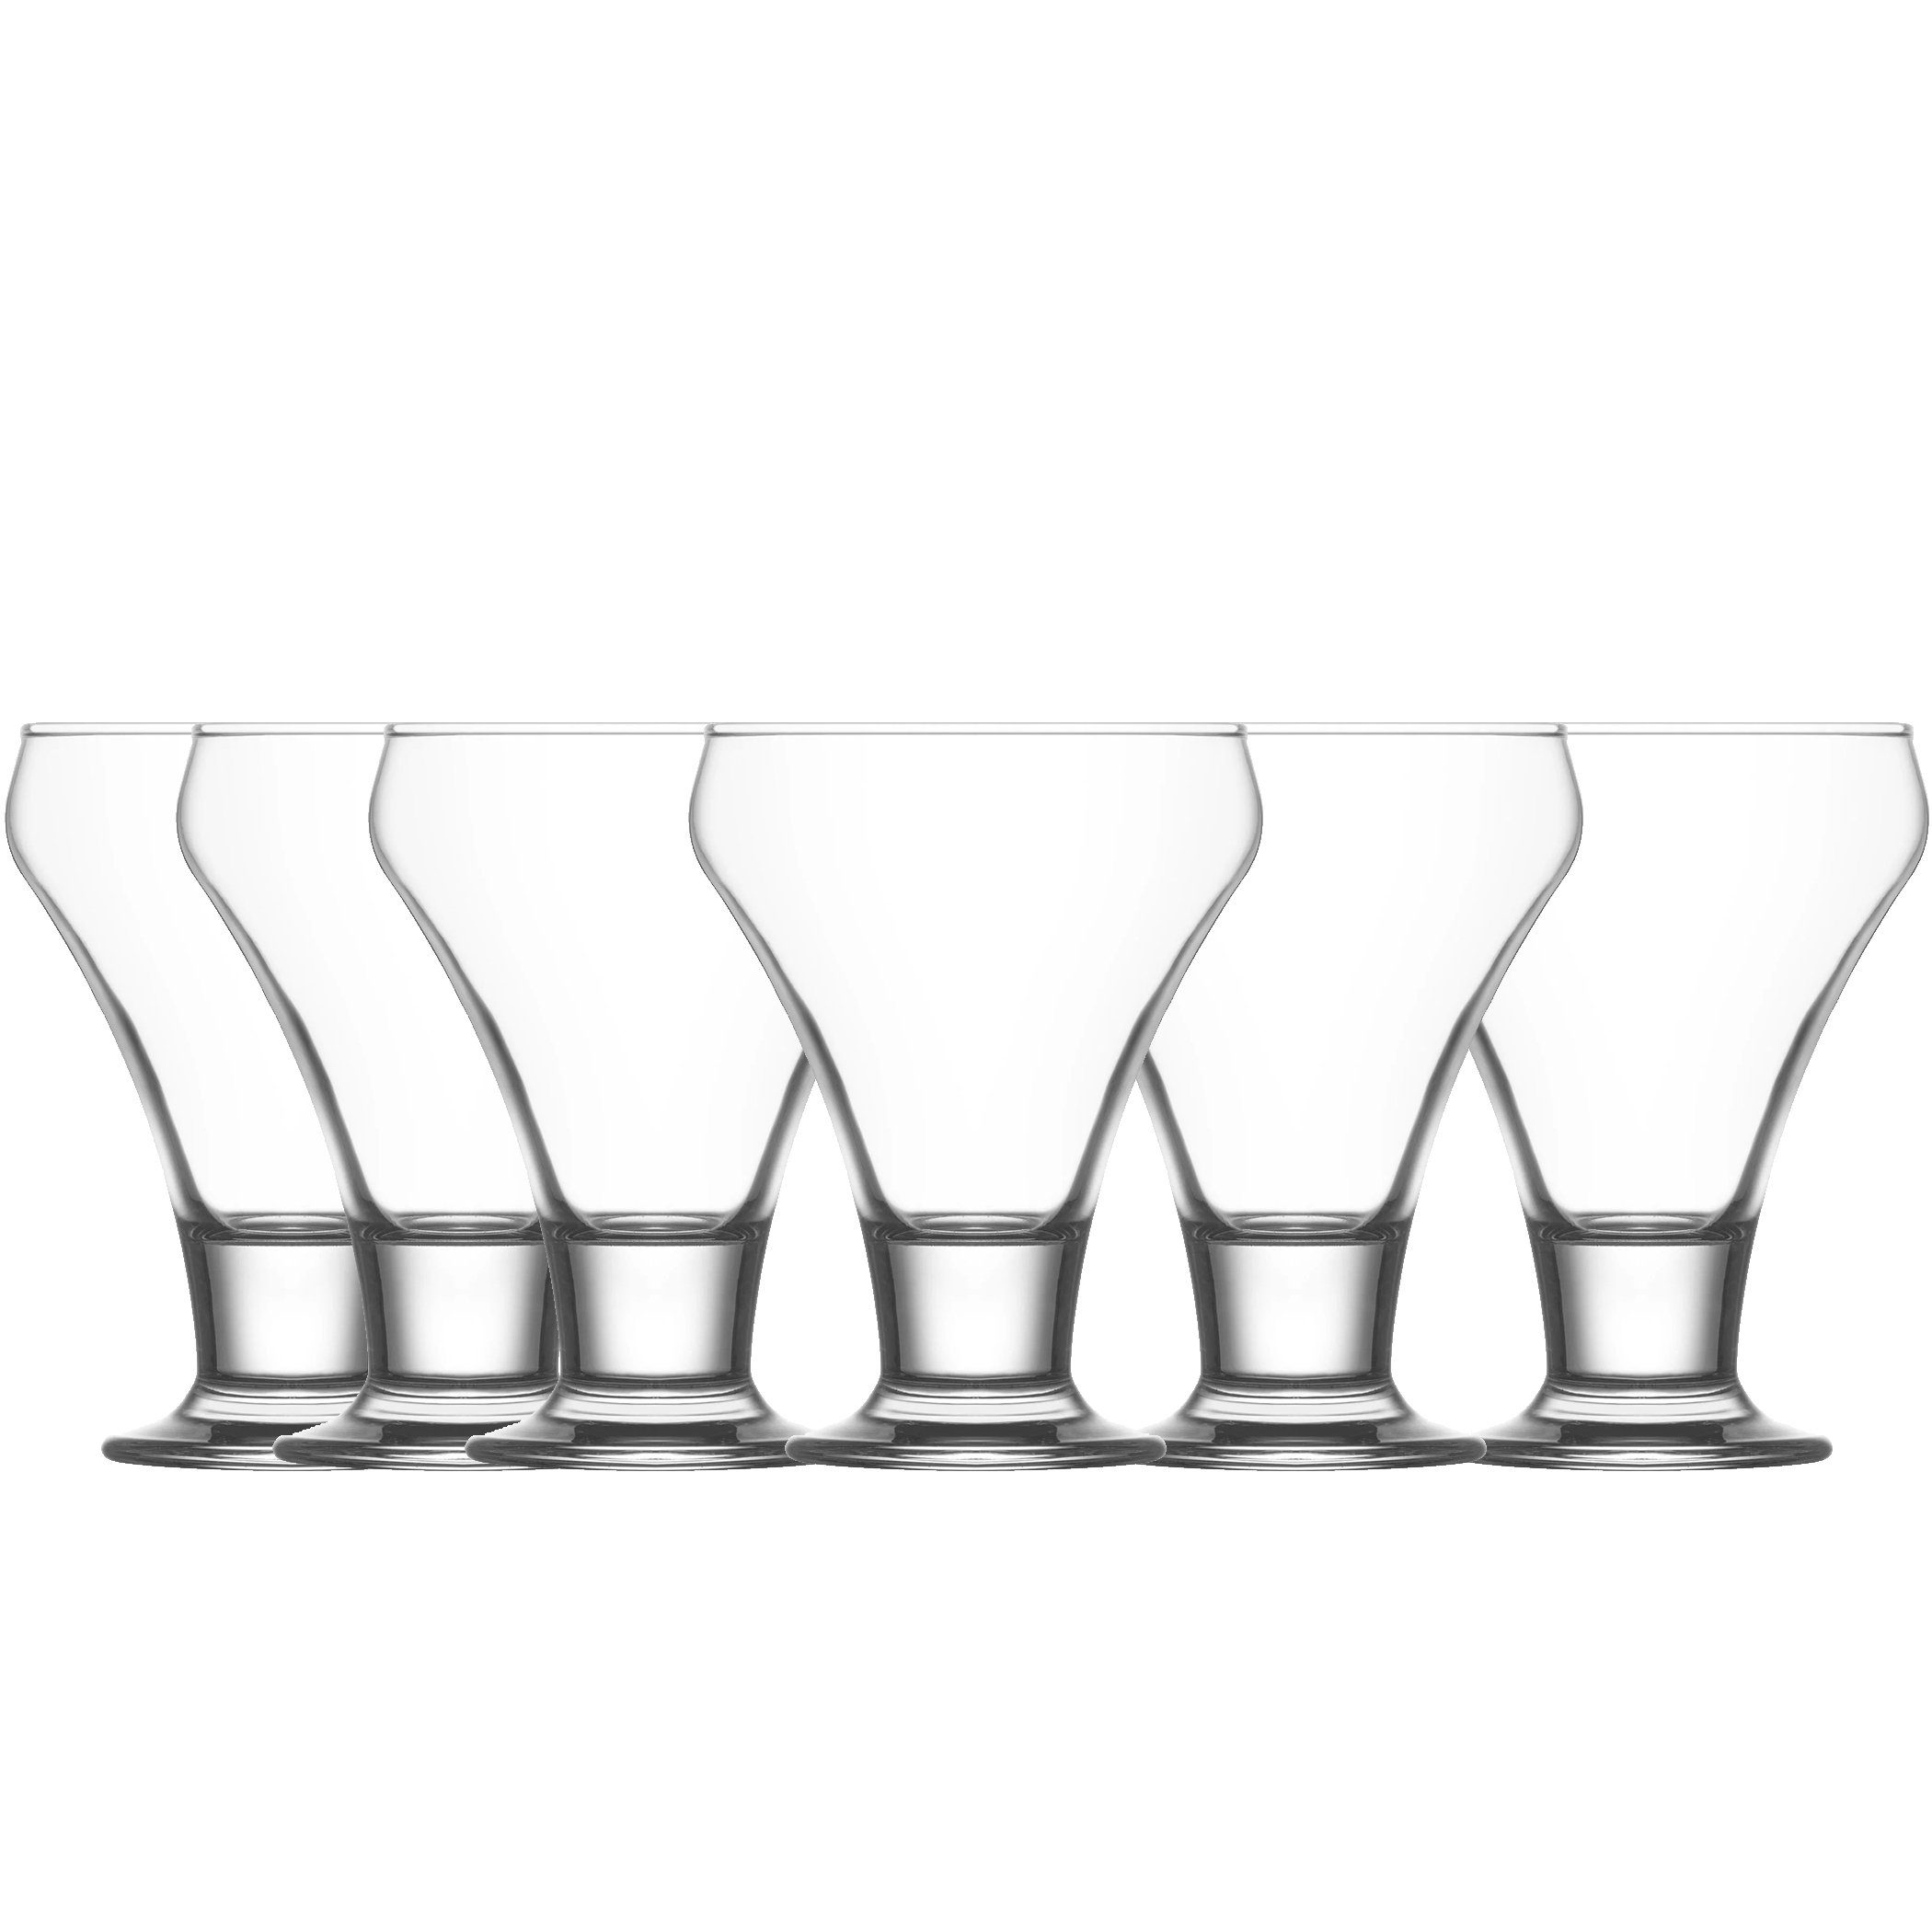 LAV Glas Eisbecher Dessert-Glas FRO378, Glas, 305ml Spülmaschinenfest 6tlg